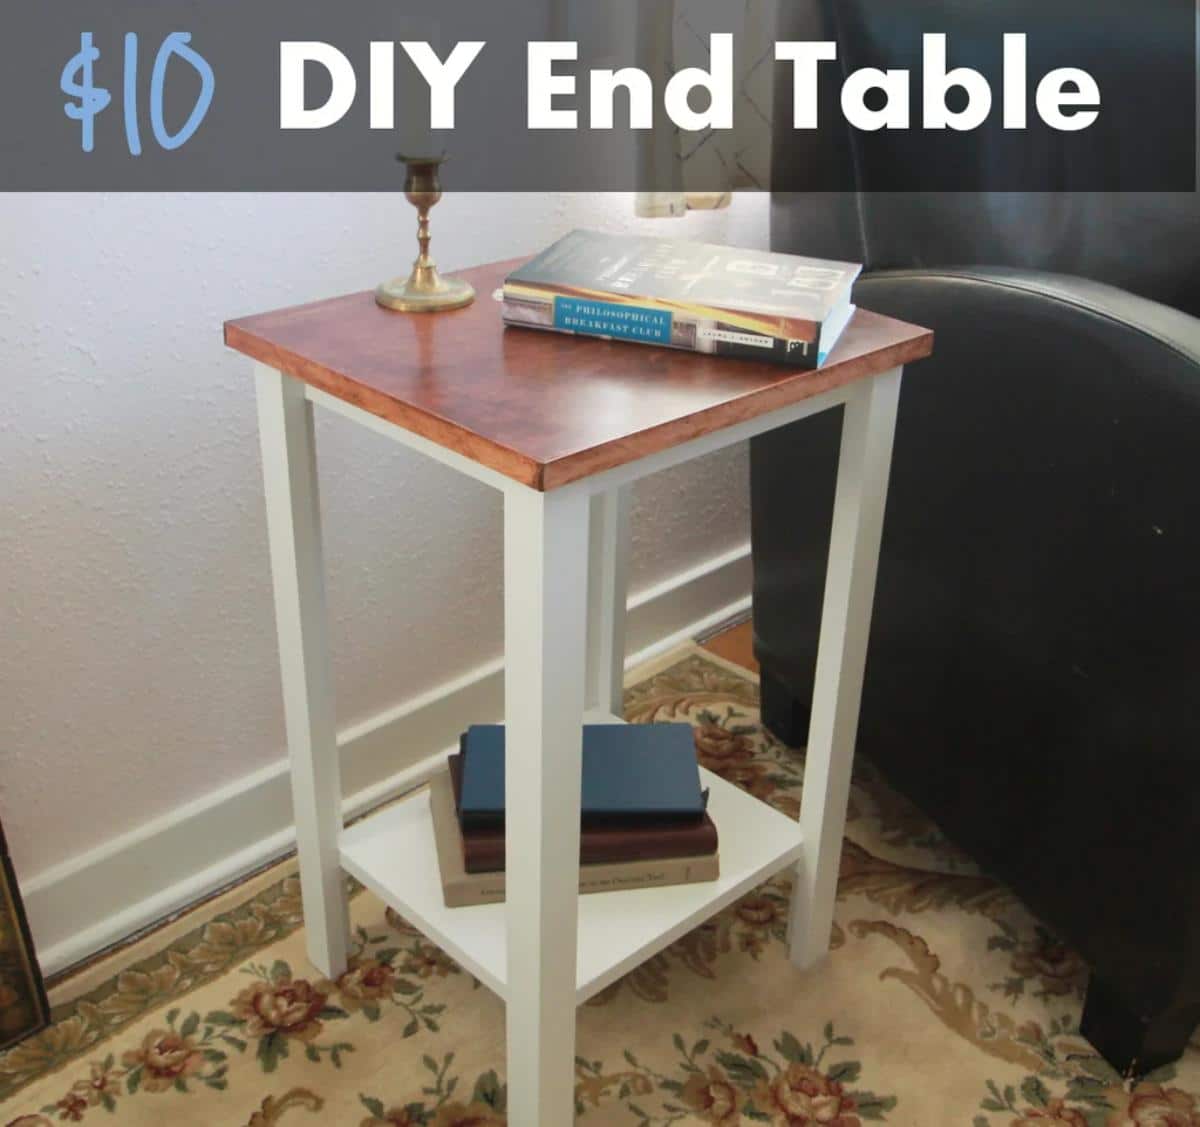 Yano nga DIY End Table alang sa $10